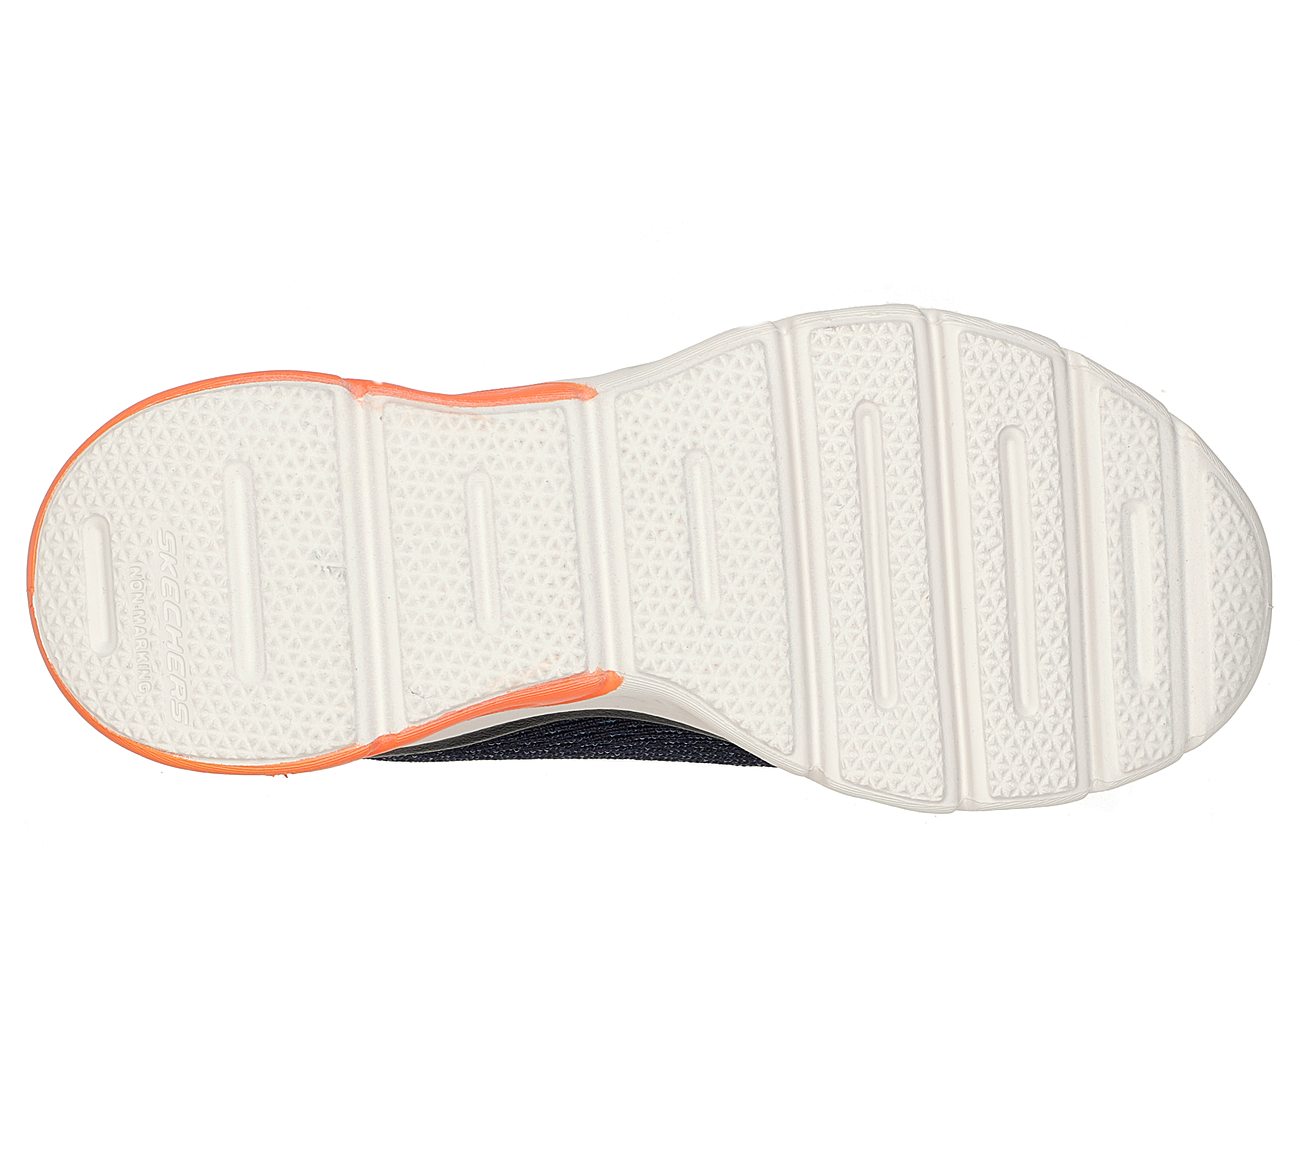 GLIDE-STEP SPORT - WAVE HEAT, NAVY/ORANGE Footwear Bottom View